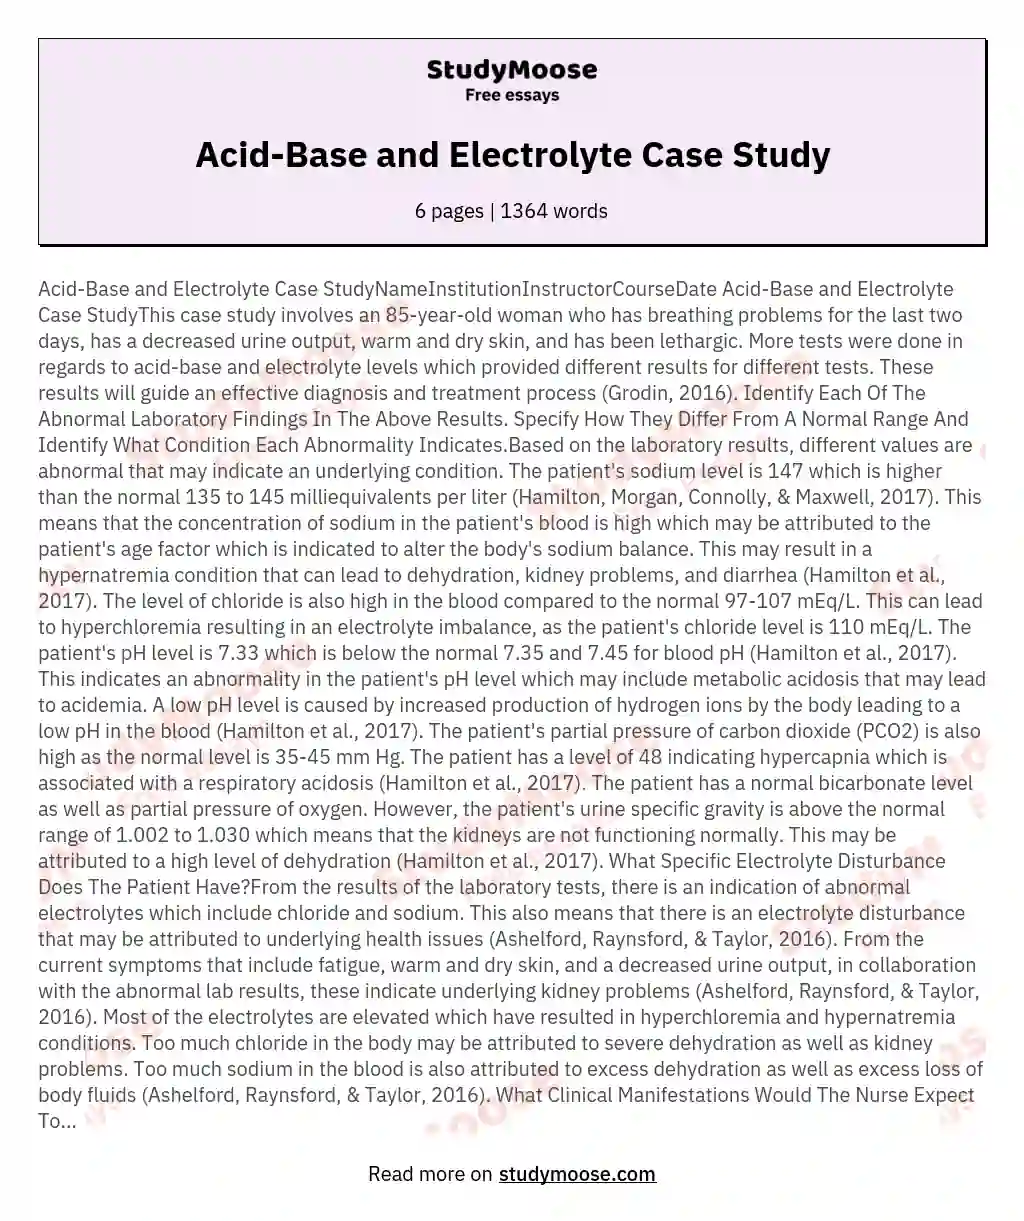 Acid-Base and Electrolyte Case Study essay